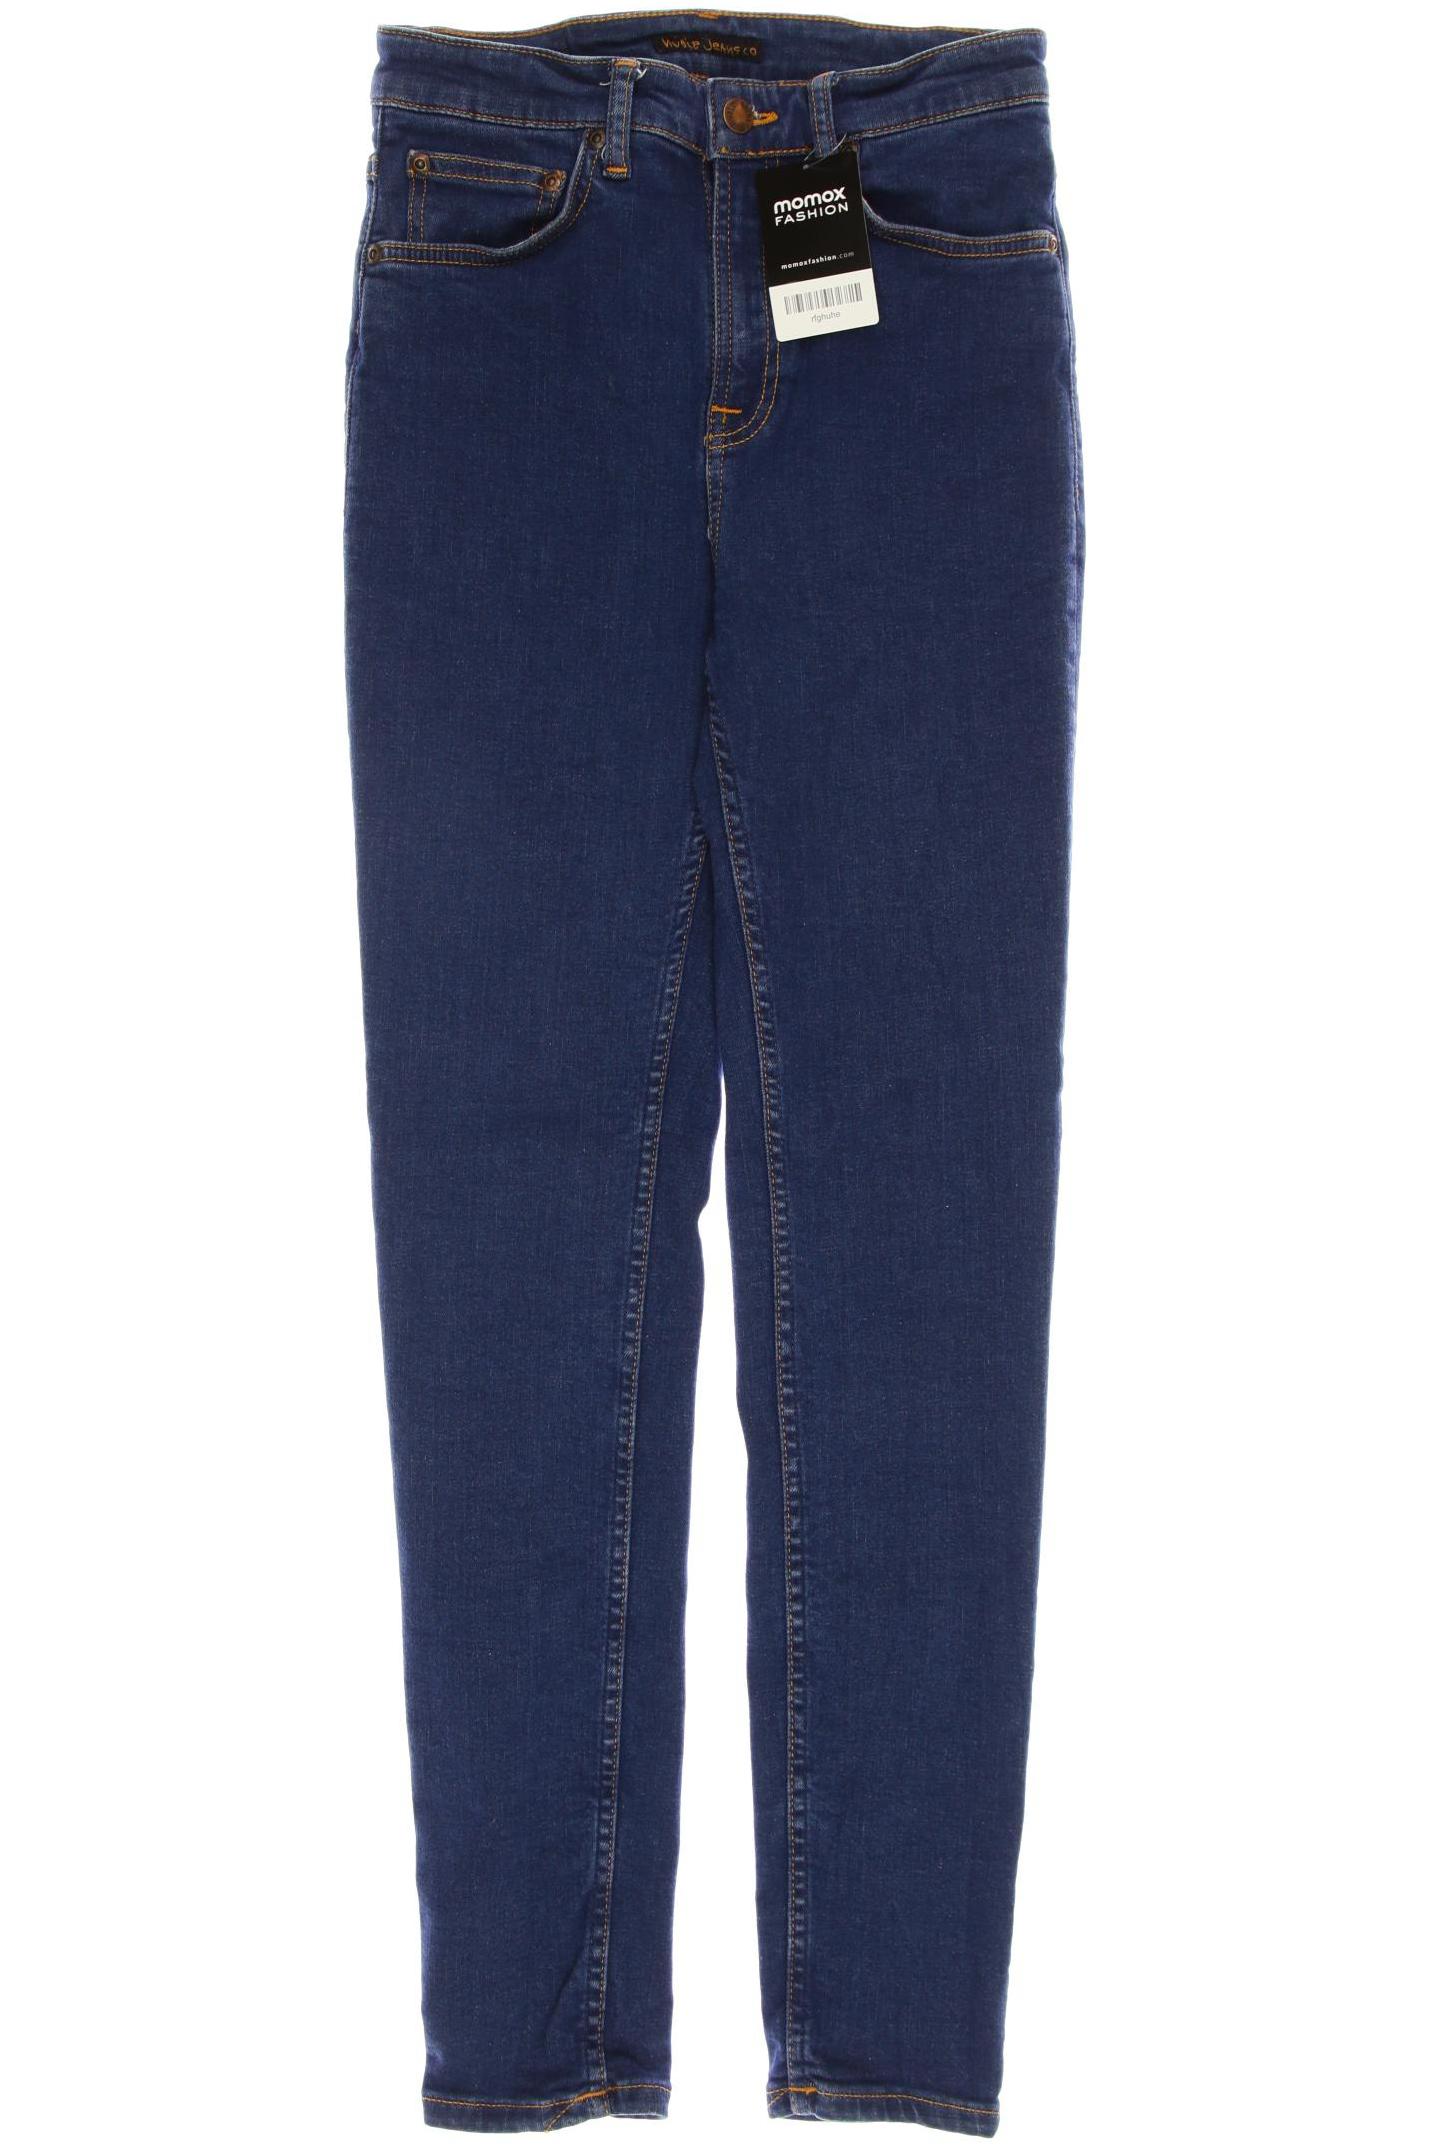 Nudie Jeans Damen Jeans, blau, Gr. 40 von Nudie Jeans